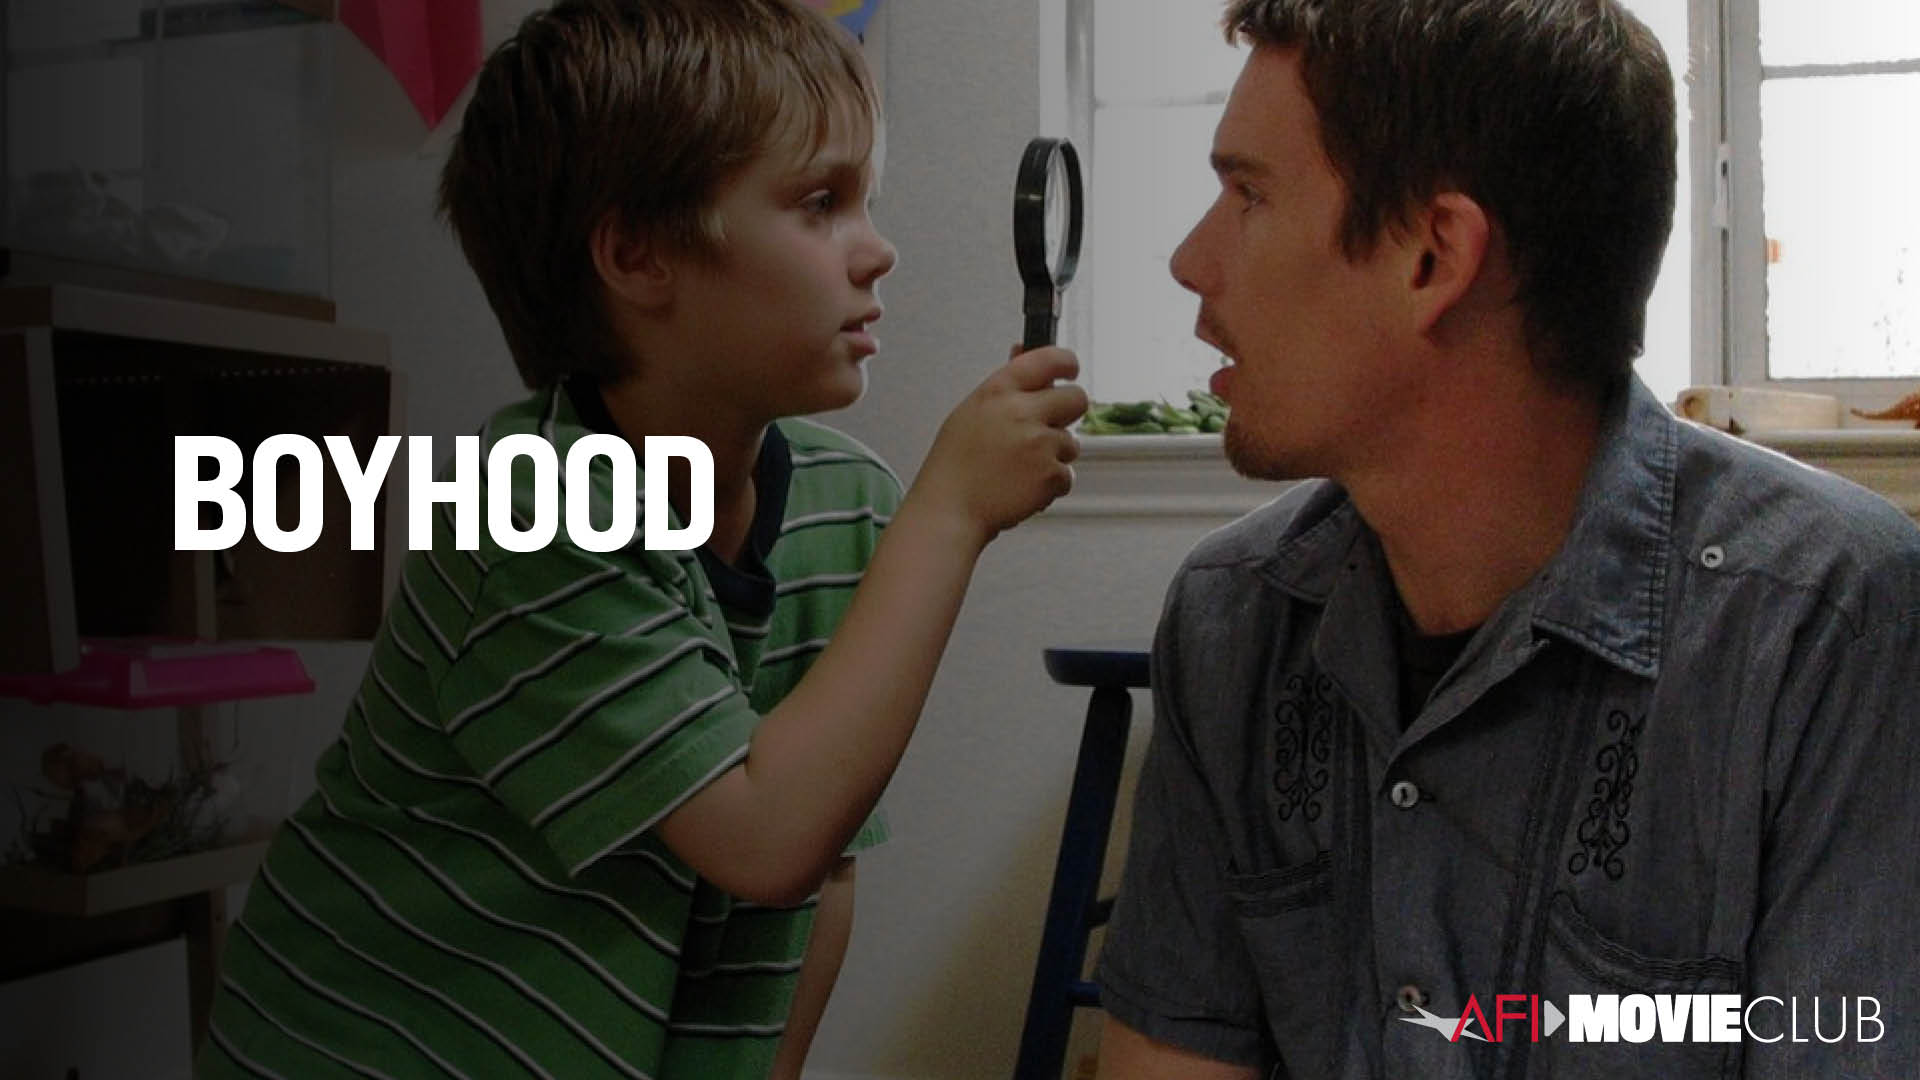 Boyhood Film Still - Ethan Hawke and Ellar Coltrane